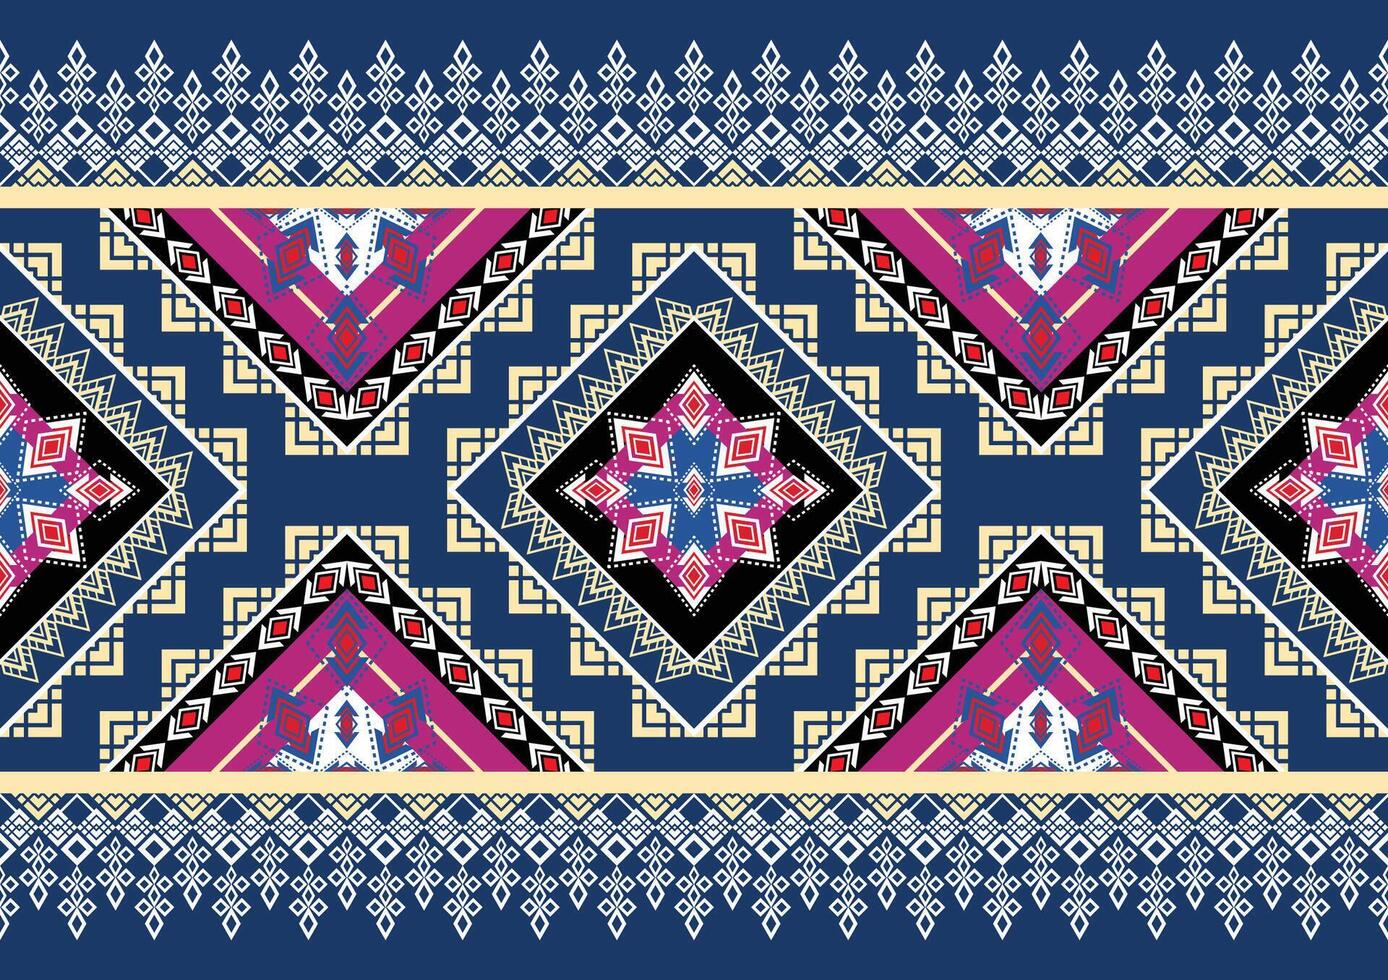 oosters etnisch naadloos patroon traditioneel achtergrond ontwerp voor tapijt, behang, kleding, inpakken, batik, kleding stof, vector illustratie borduurwerk stijl.